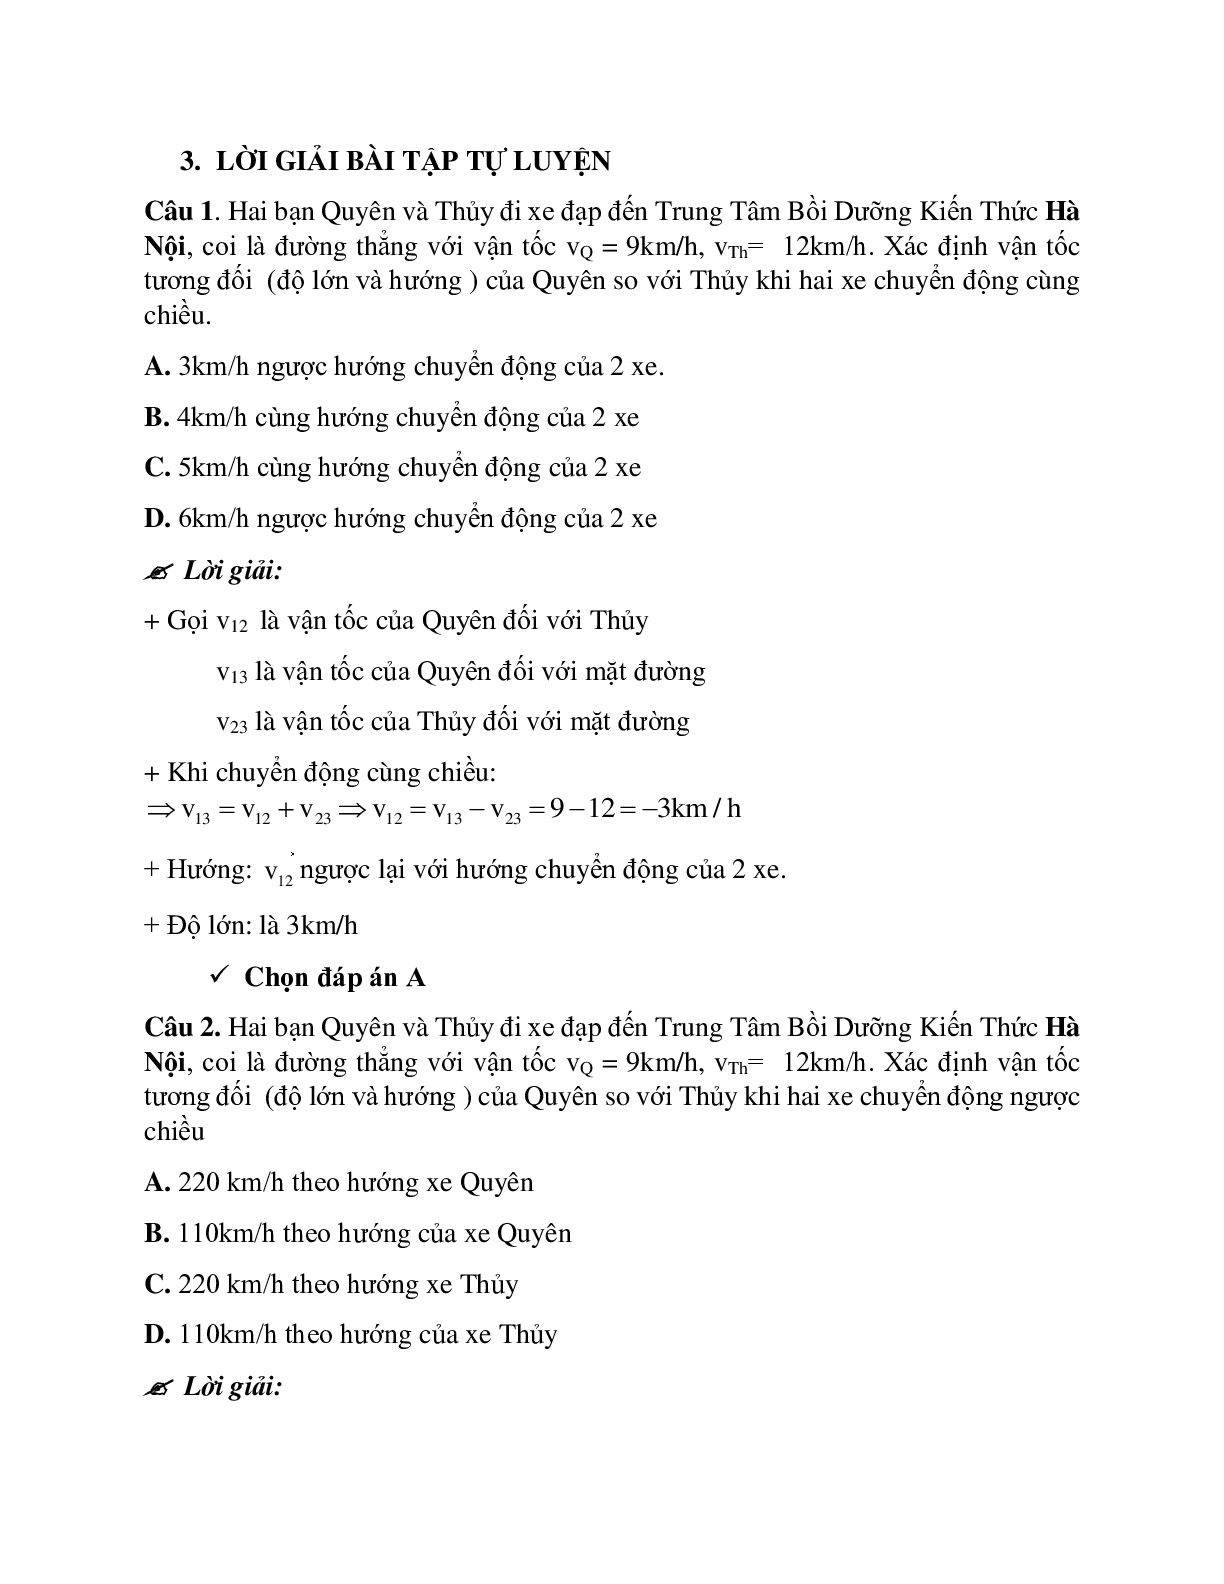 Bài tập về tính tương đối của chuyển động có đáp án (trang 10)